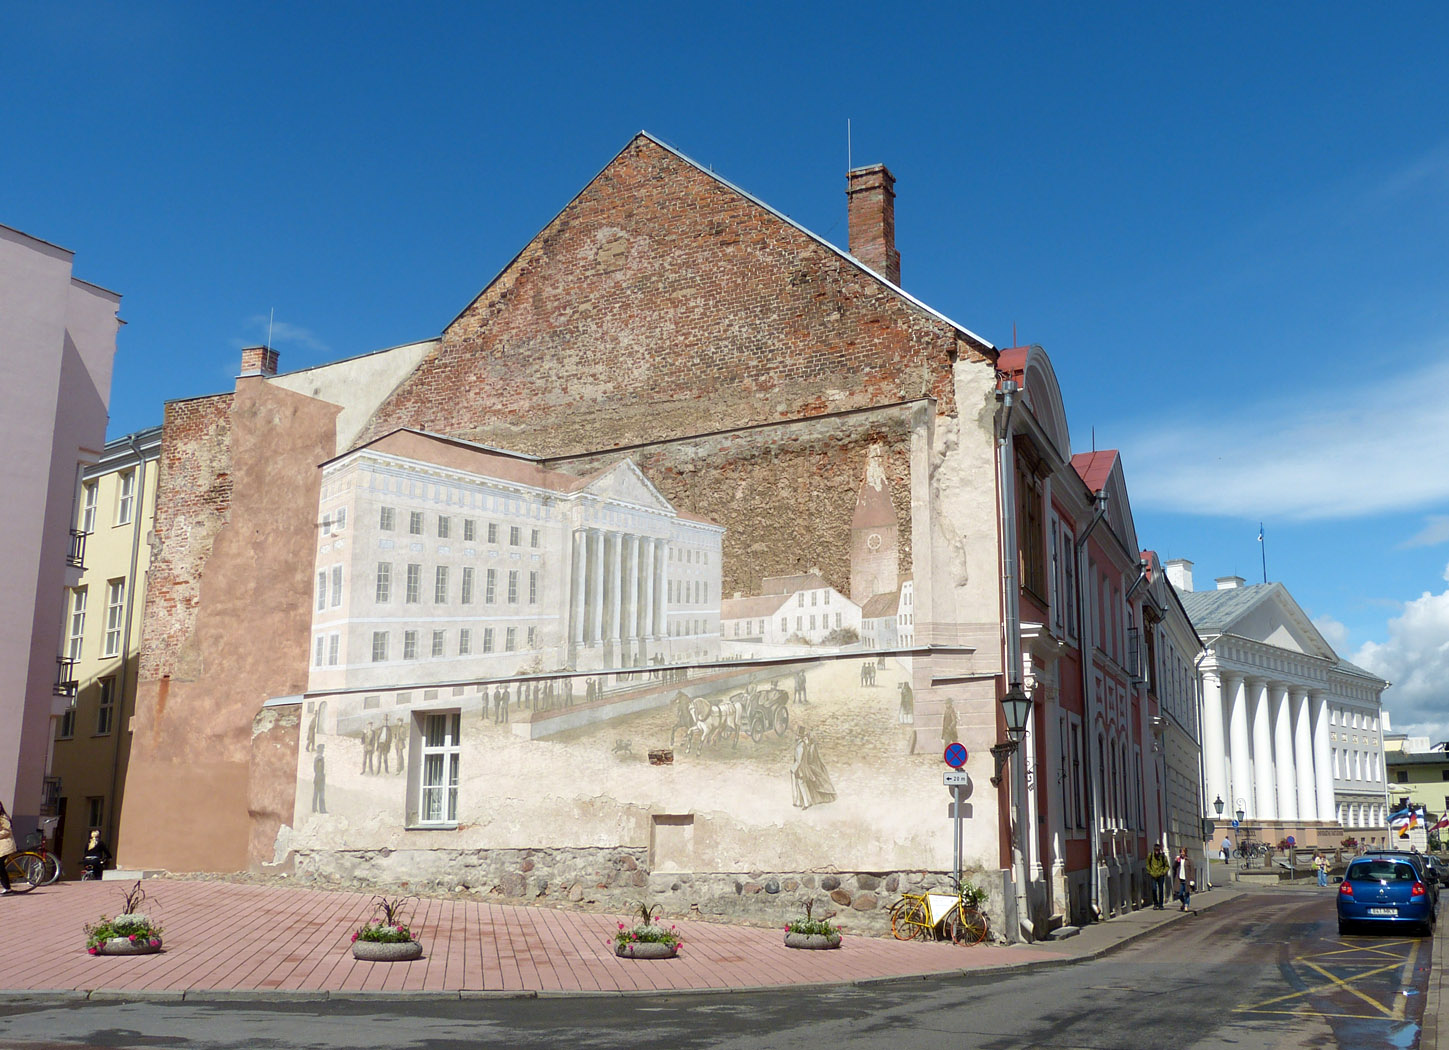 University Building and Mural, Tartu, Estonia